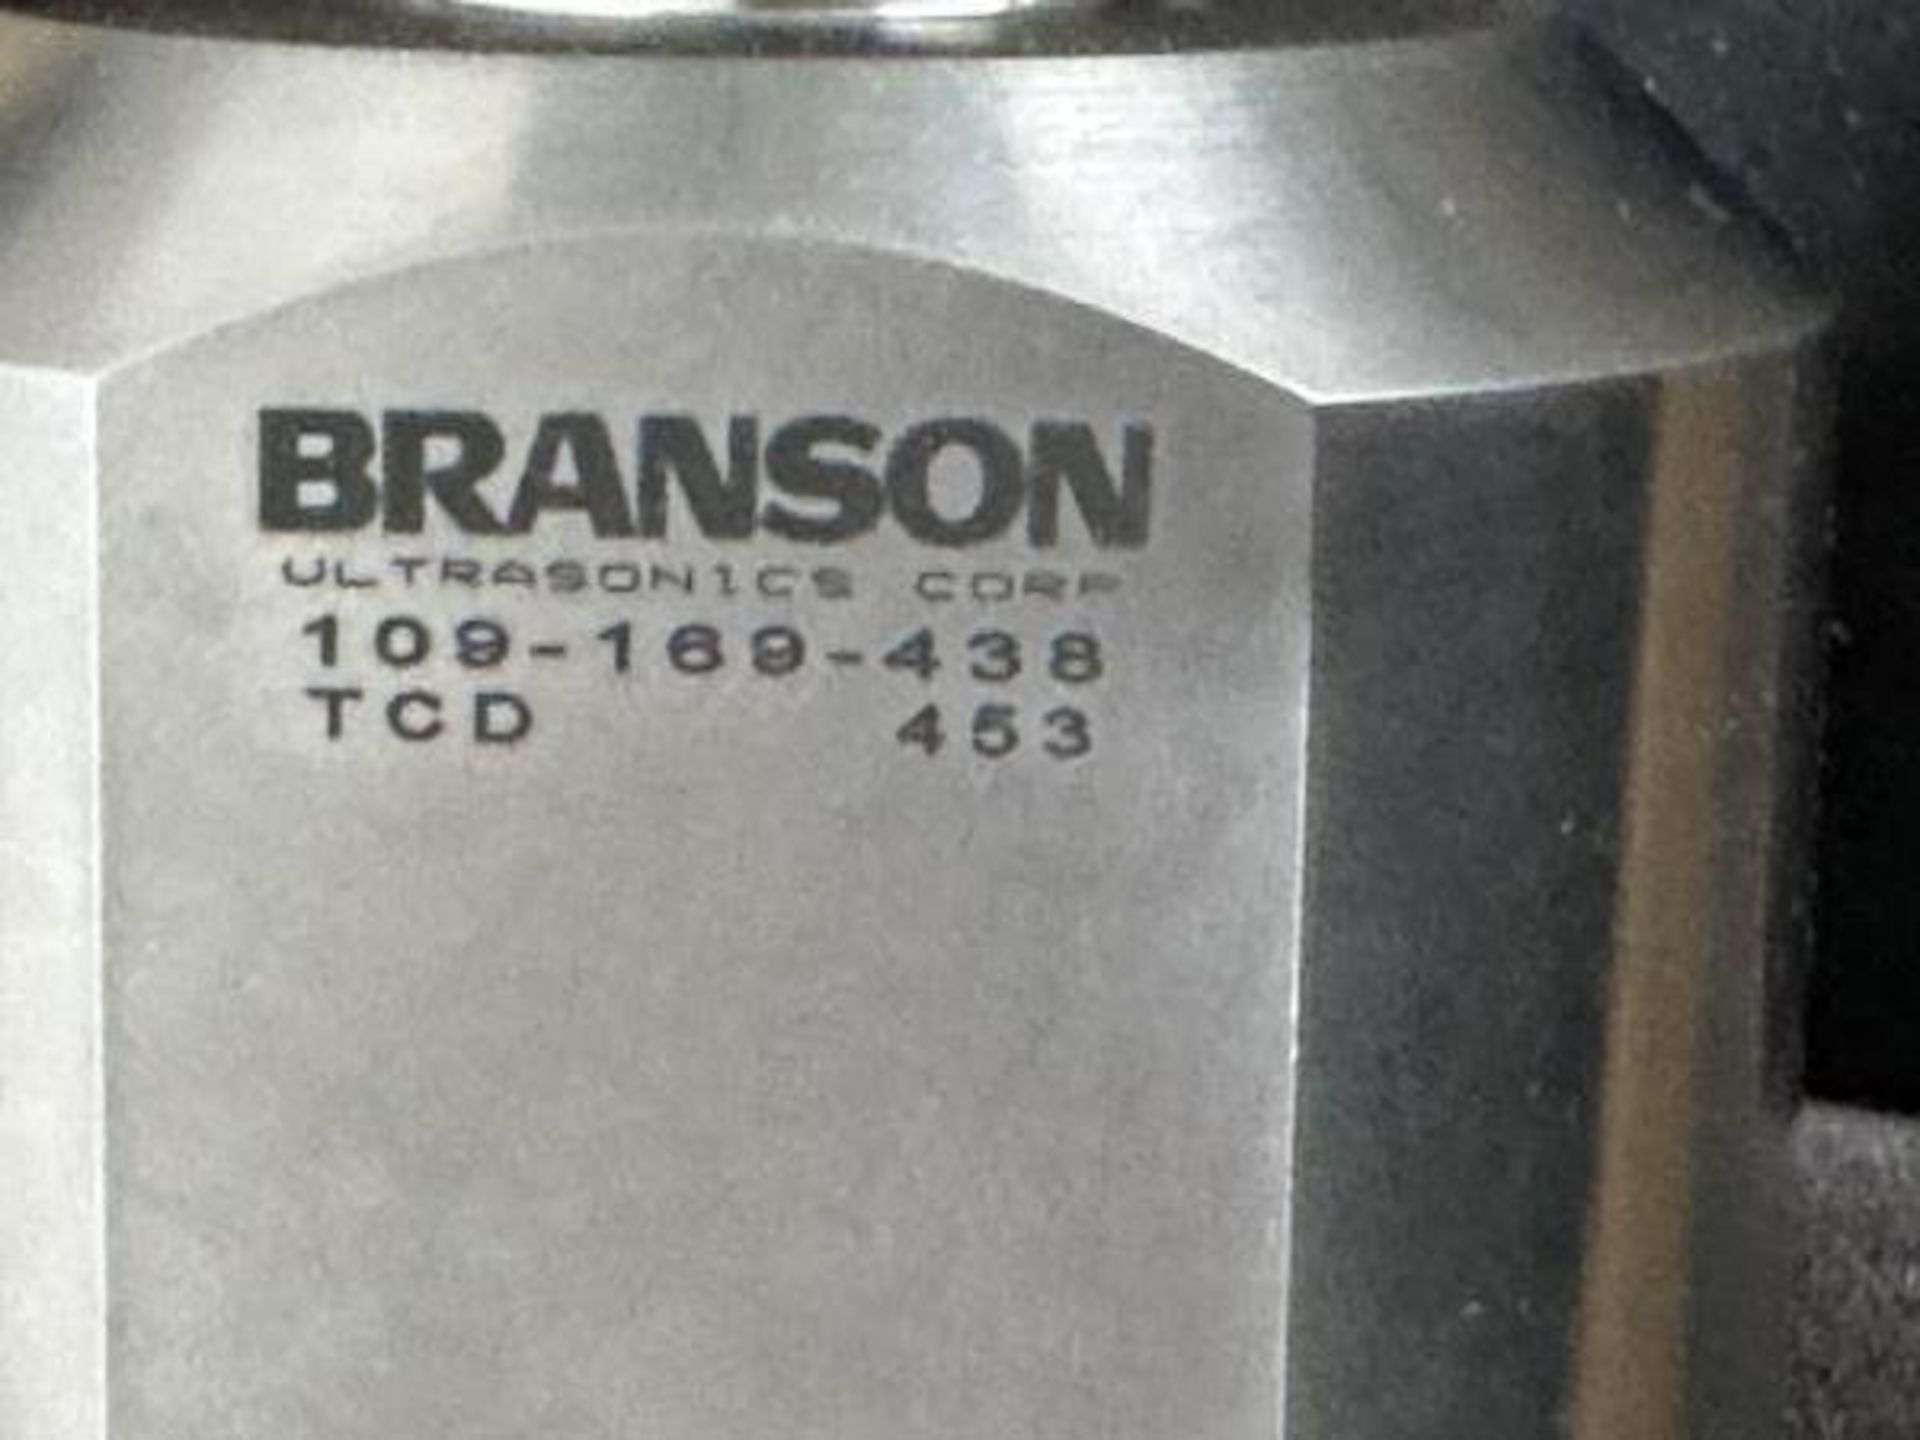 Branson Part: 109-169-436, TCD 453 0-RING FLANGE HORN - Bild 2 aus 6